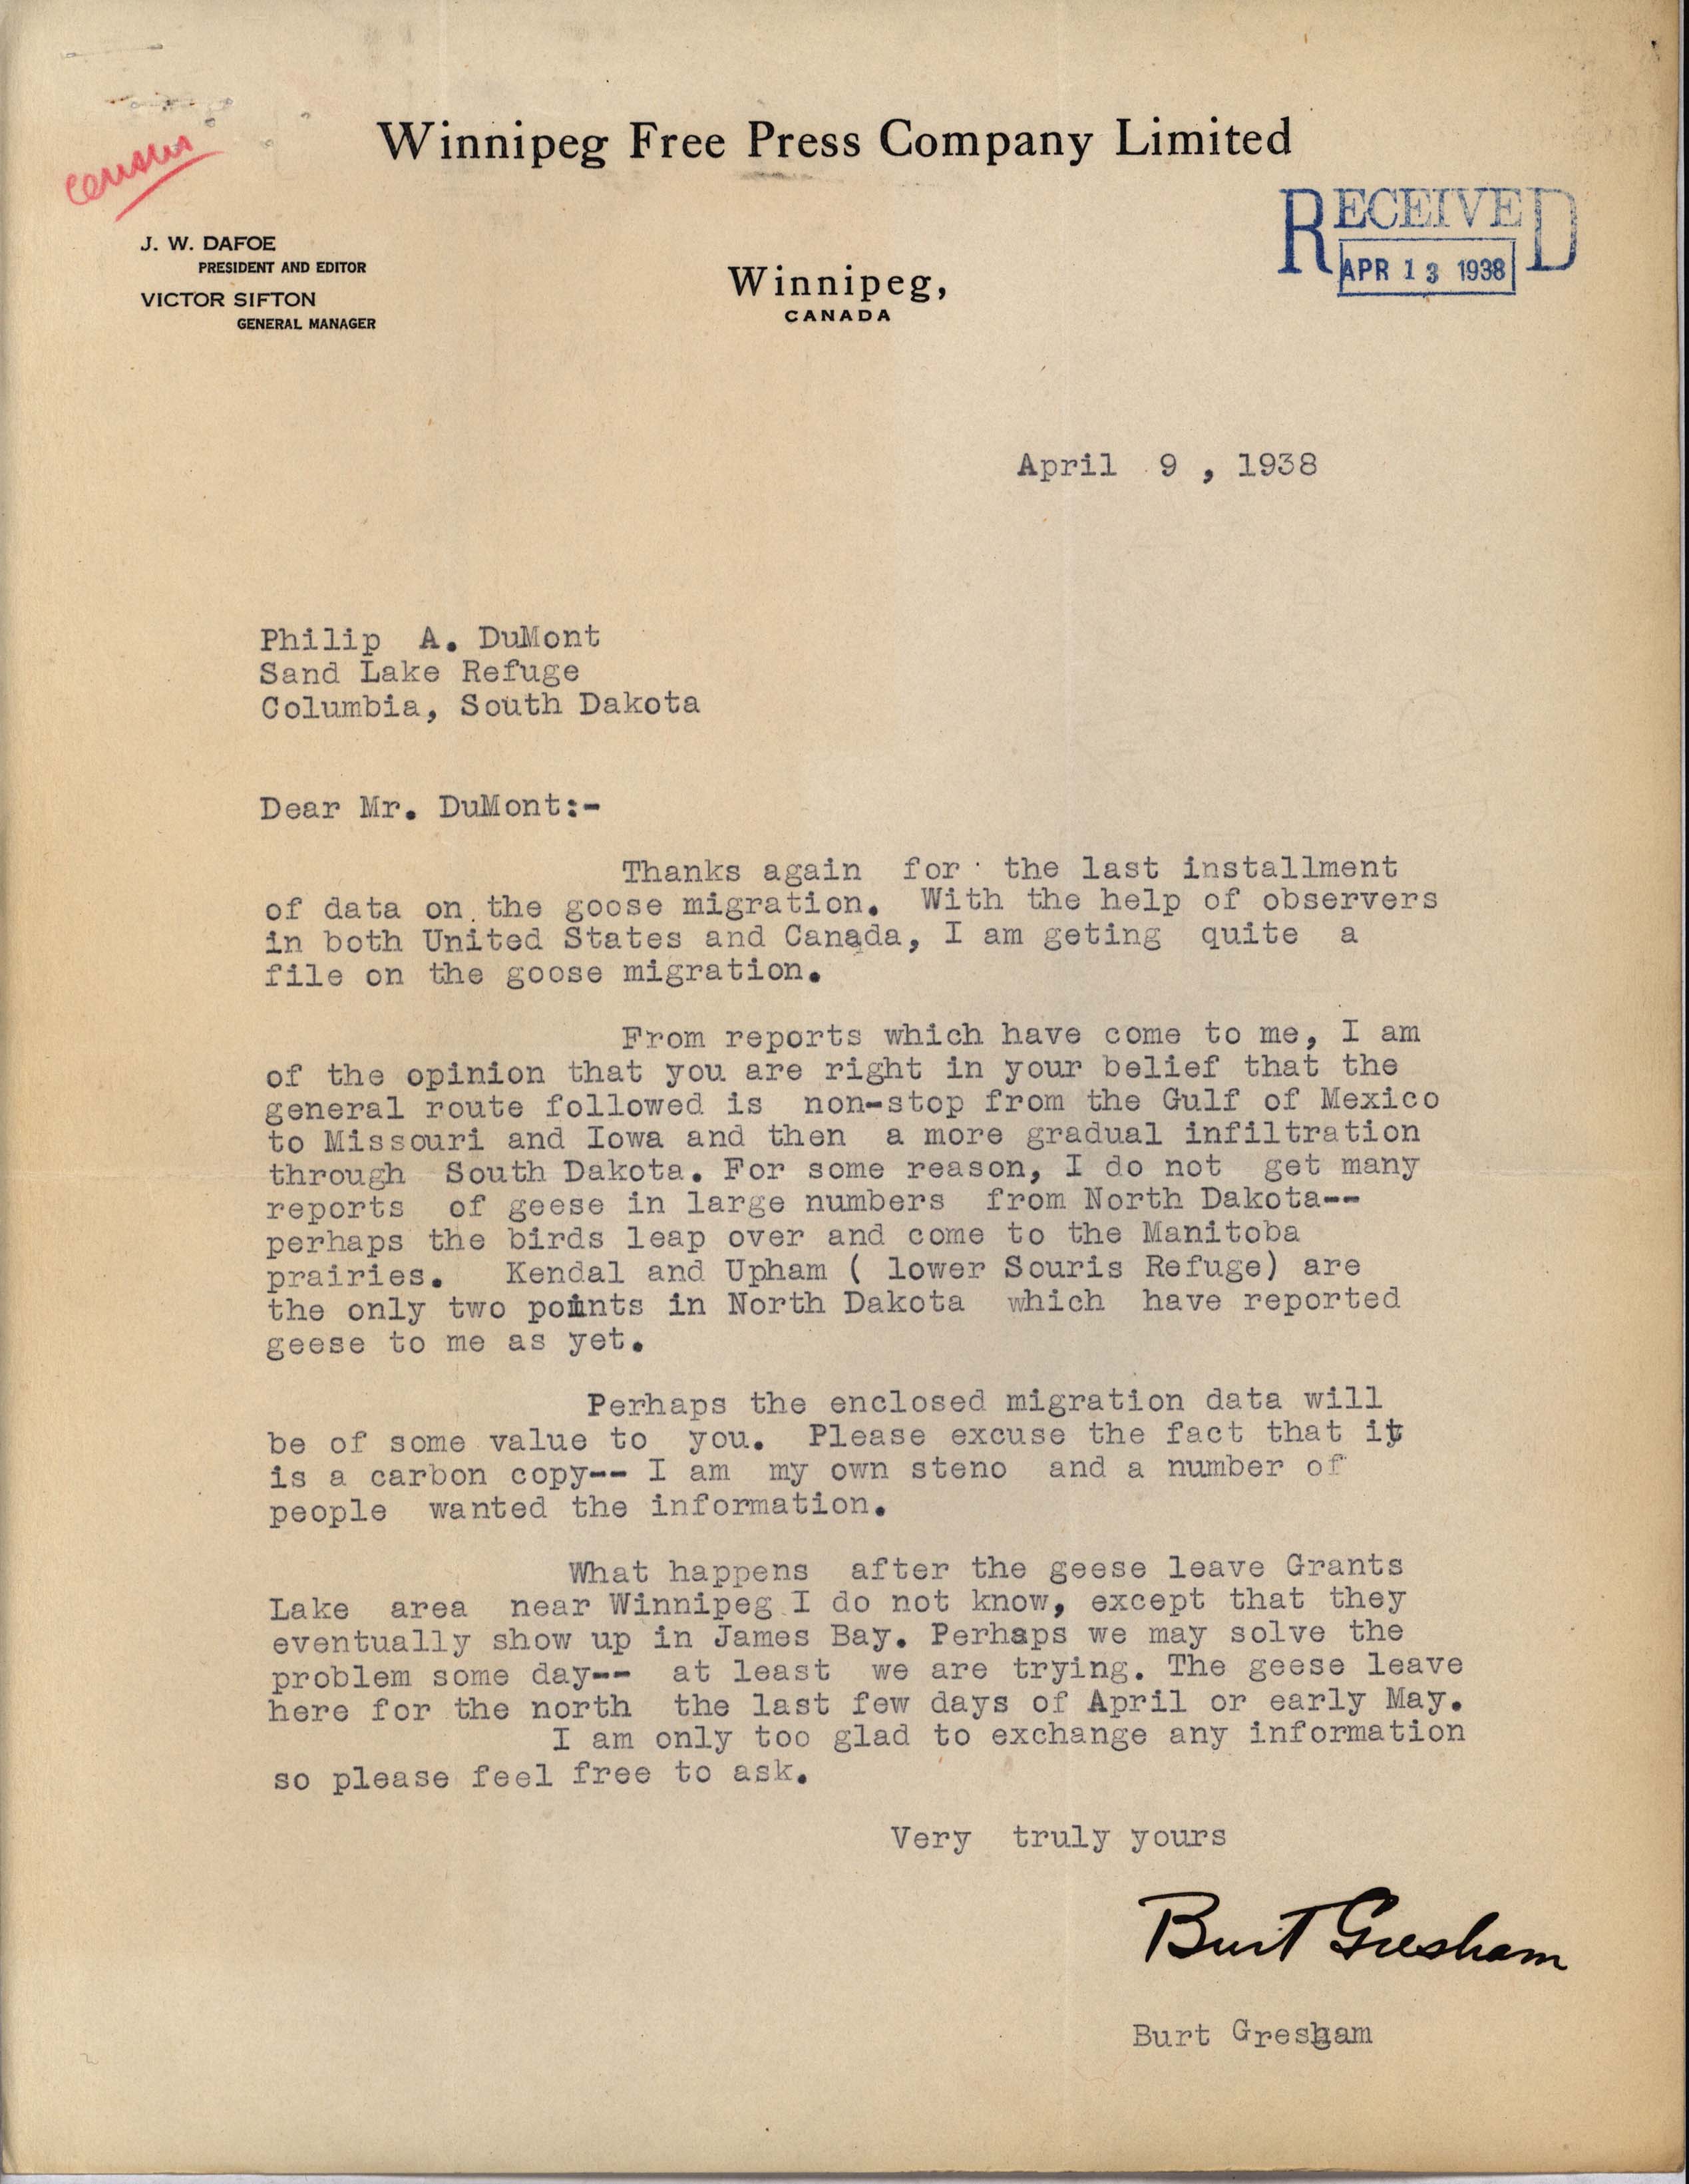 Burt Gresham letter to Philip DuMont regarding Goose migration, April 9, 1938